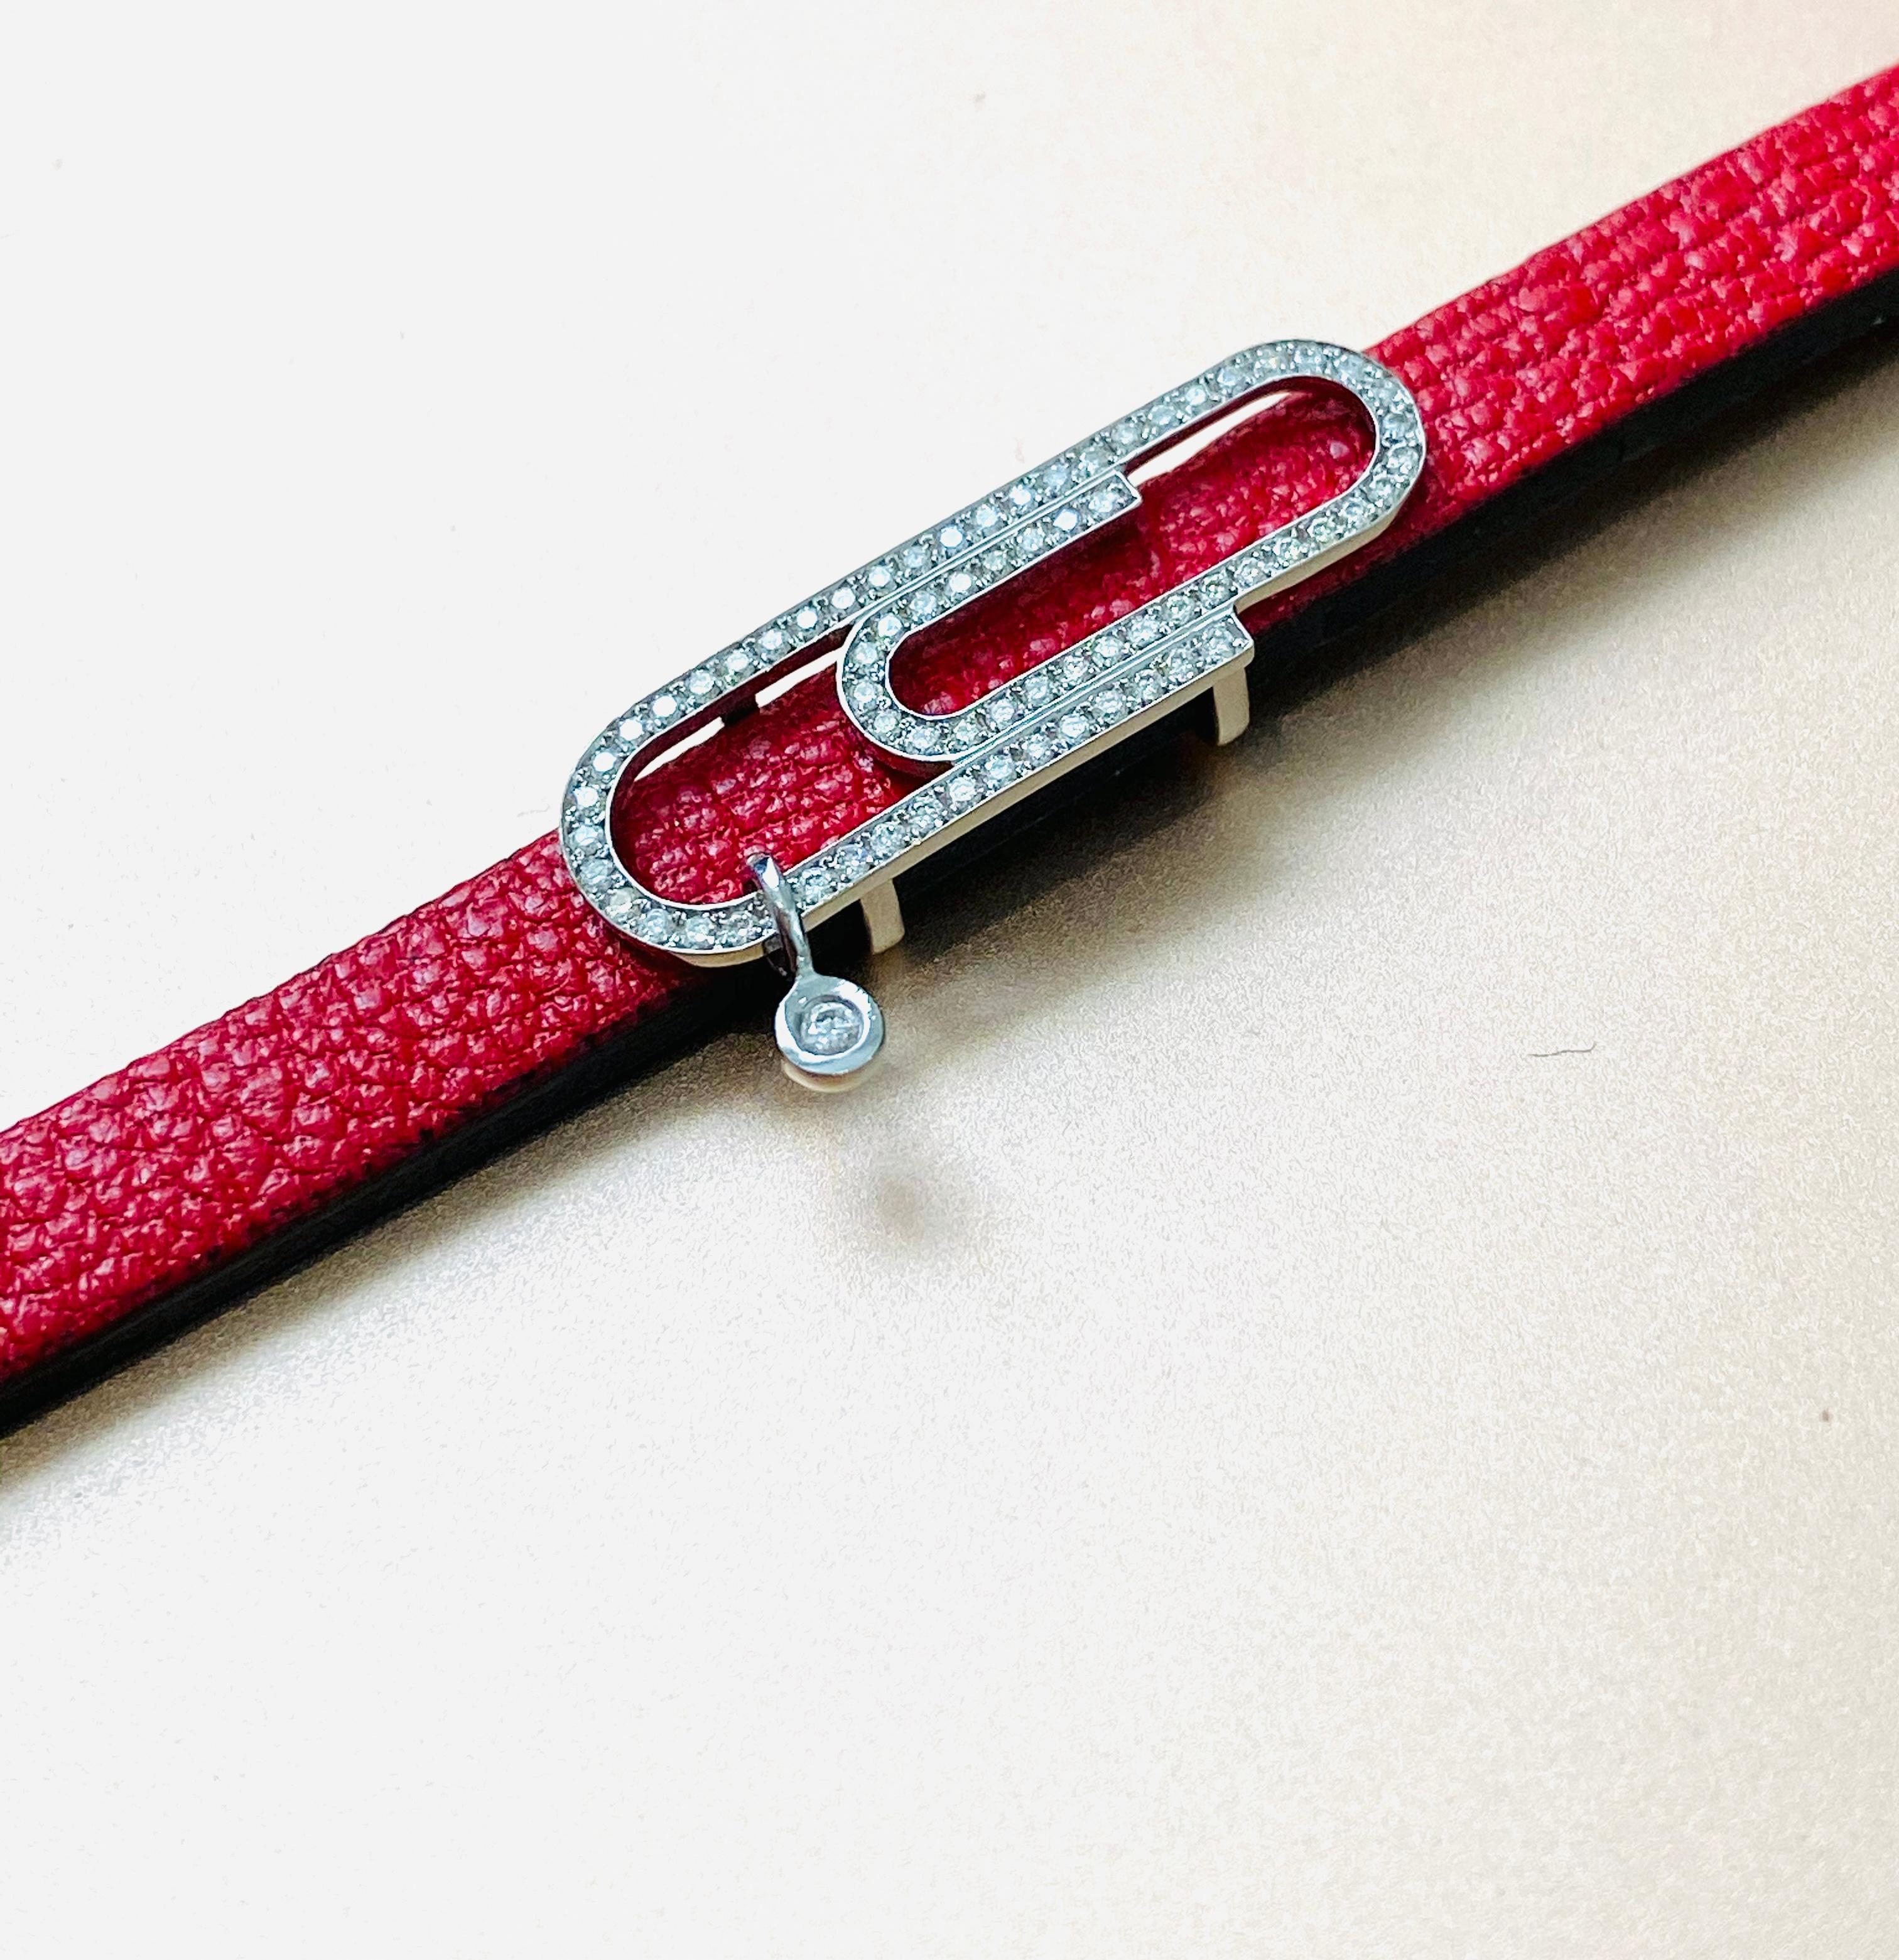 Geraldo Pin Bracelet de ceinture en cuir avec diamants - Une fusion de glamour et de polyvalence

Entrez dans le monde de l'élégance et de la polyvalence avec le bracelet ceinture en cuir Geraldo Pin Diamond, une création remarquable née de la